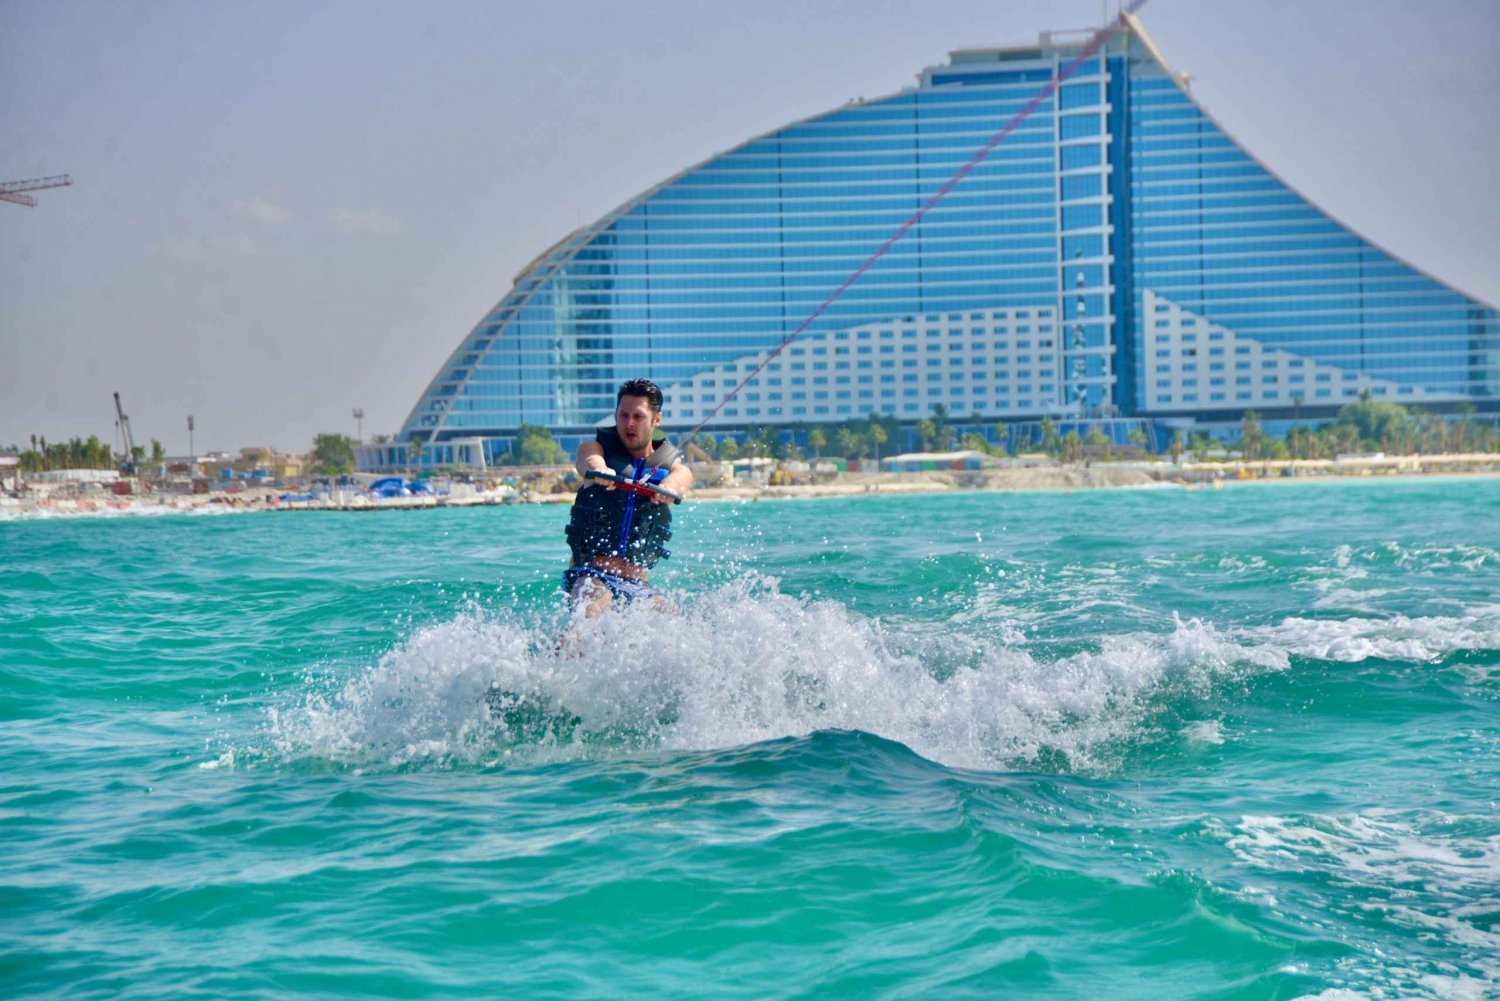 WakeBoard: Åk skidor på Dubais havsvatten med wakeboard